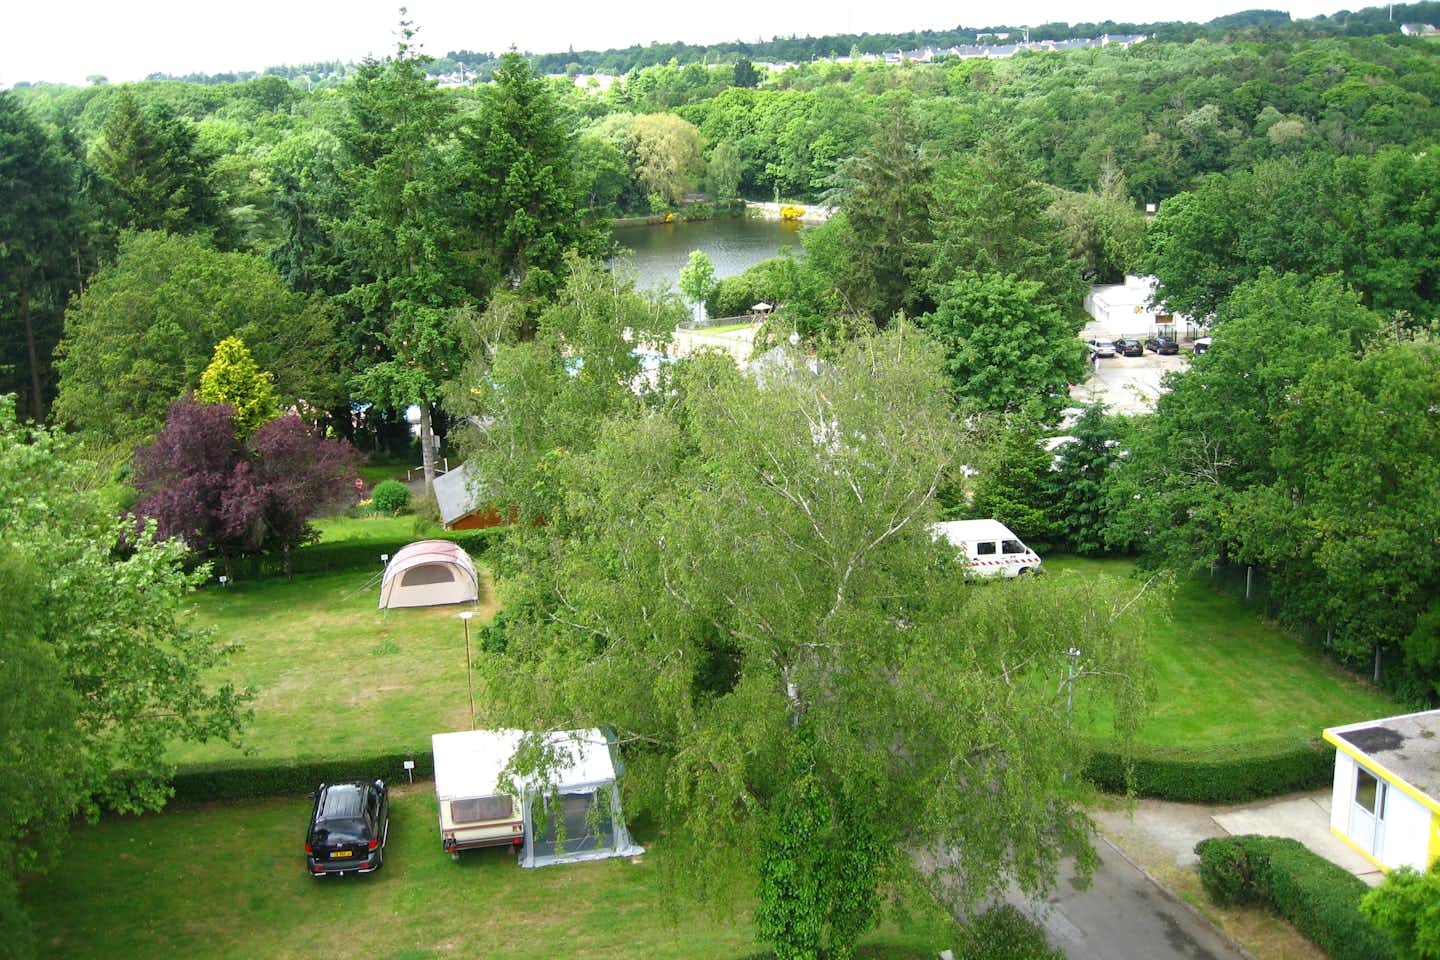 Camping du Lac de Savenay - Vogelperspektive auf die Stellplätze des Campingplatzes und den See auf dem Gelände